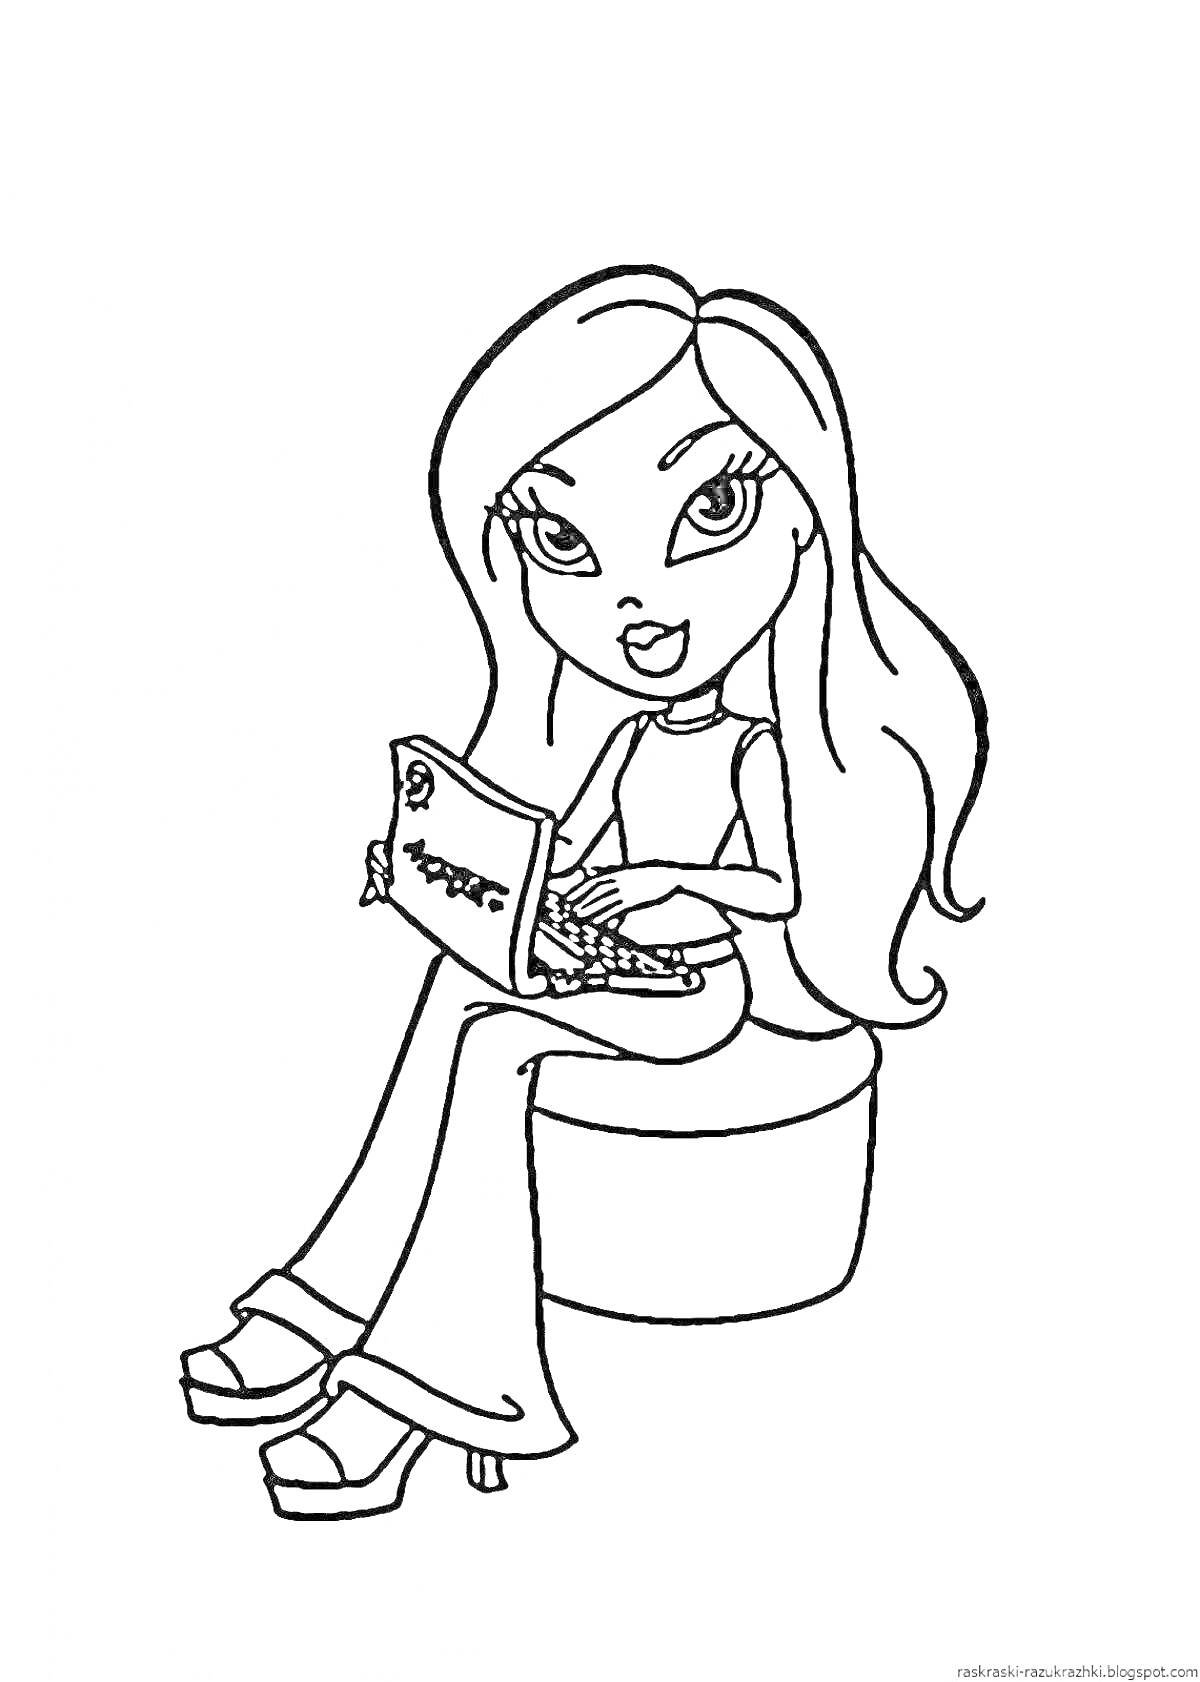 Девочка с длинными волосами, работающая на ноутбуке и сидящая на пуфике, в джинсовых брюках и на платформе